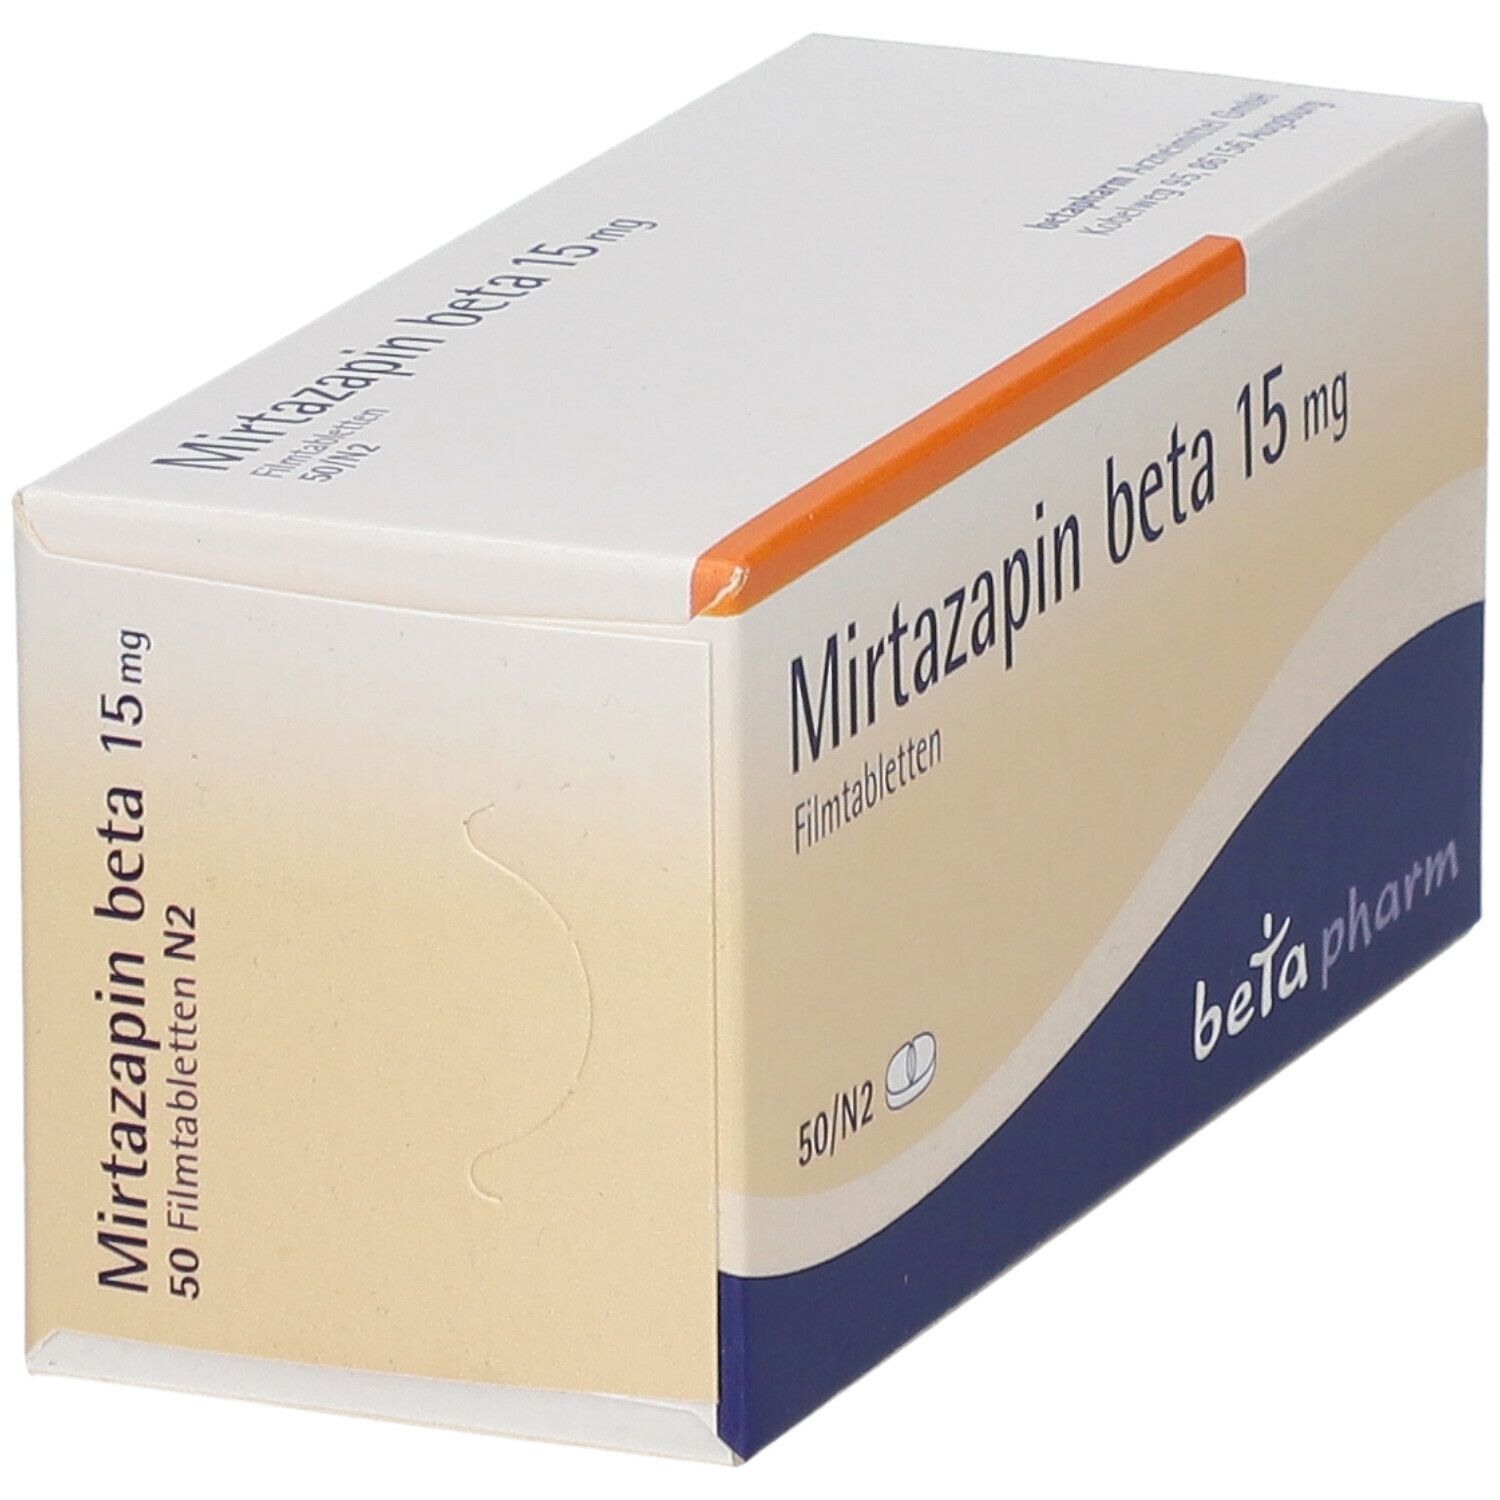 Mirtazapin beta 15 mg